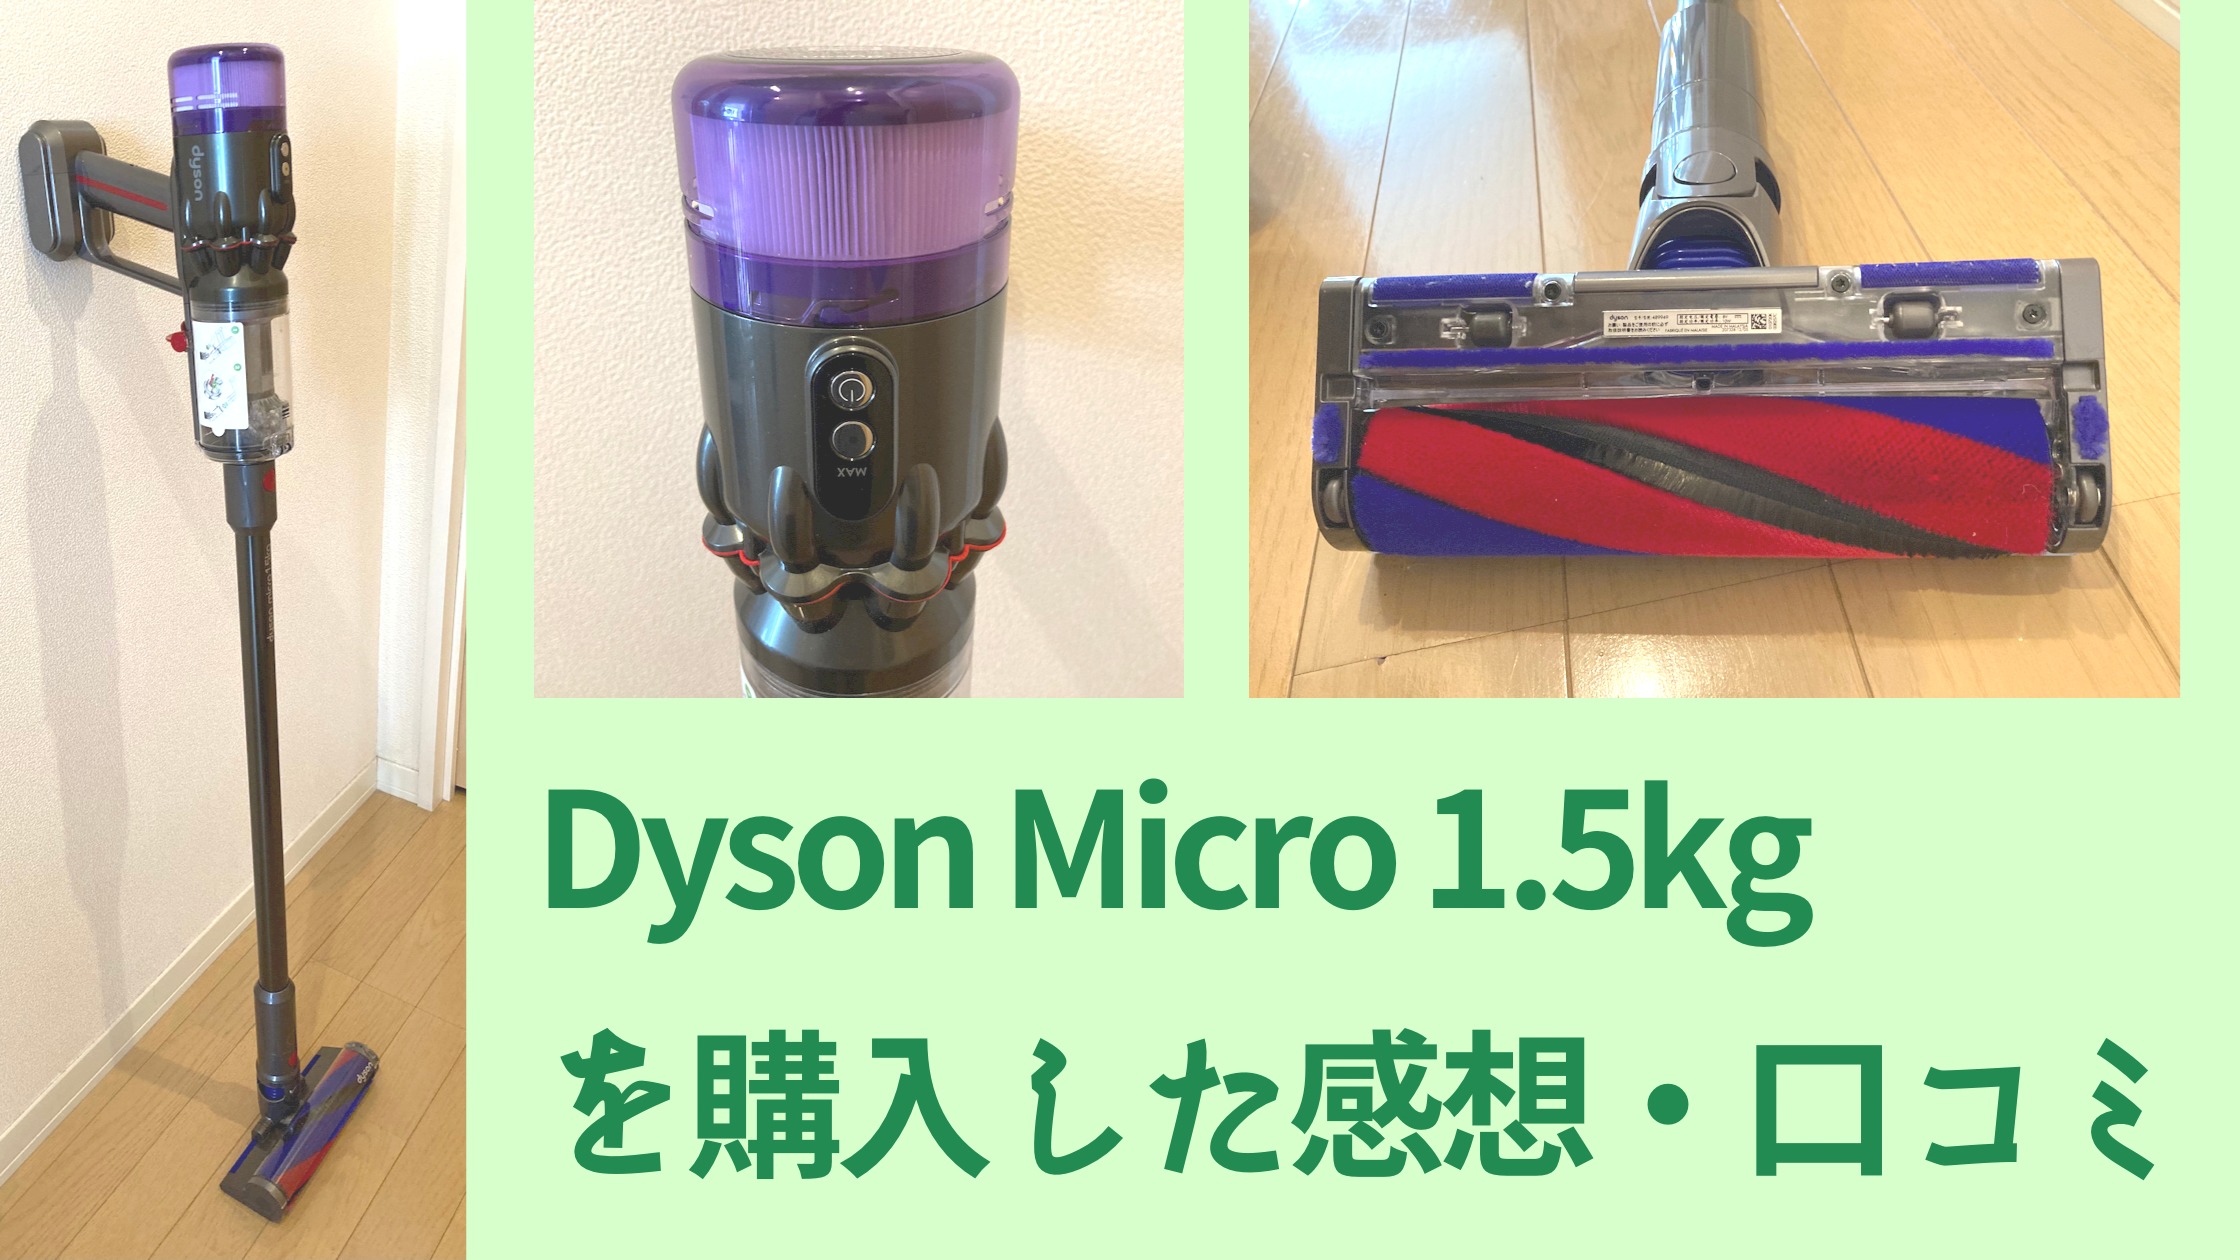 店舗併売品 ダイソン complete micro1.5kg 掃除機